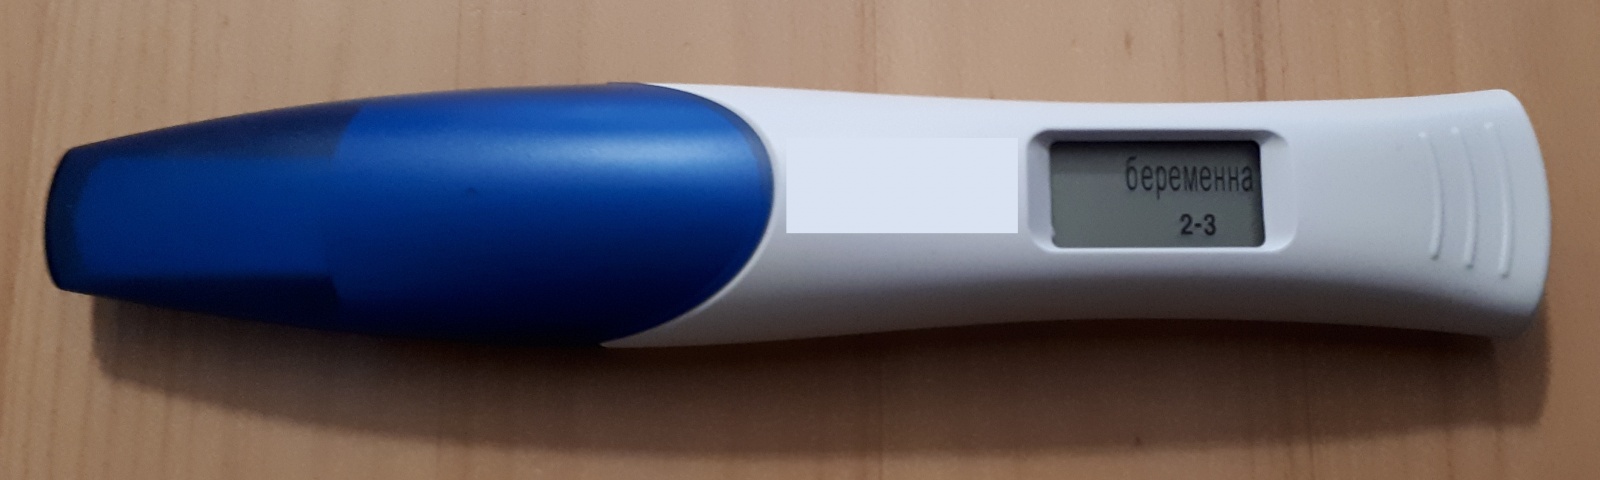 Электронный тест беременности из аптеки: как это работает - 1